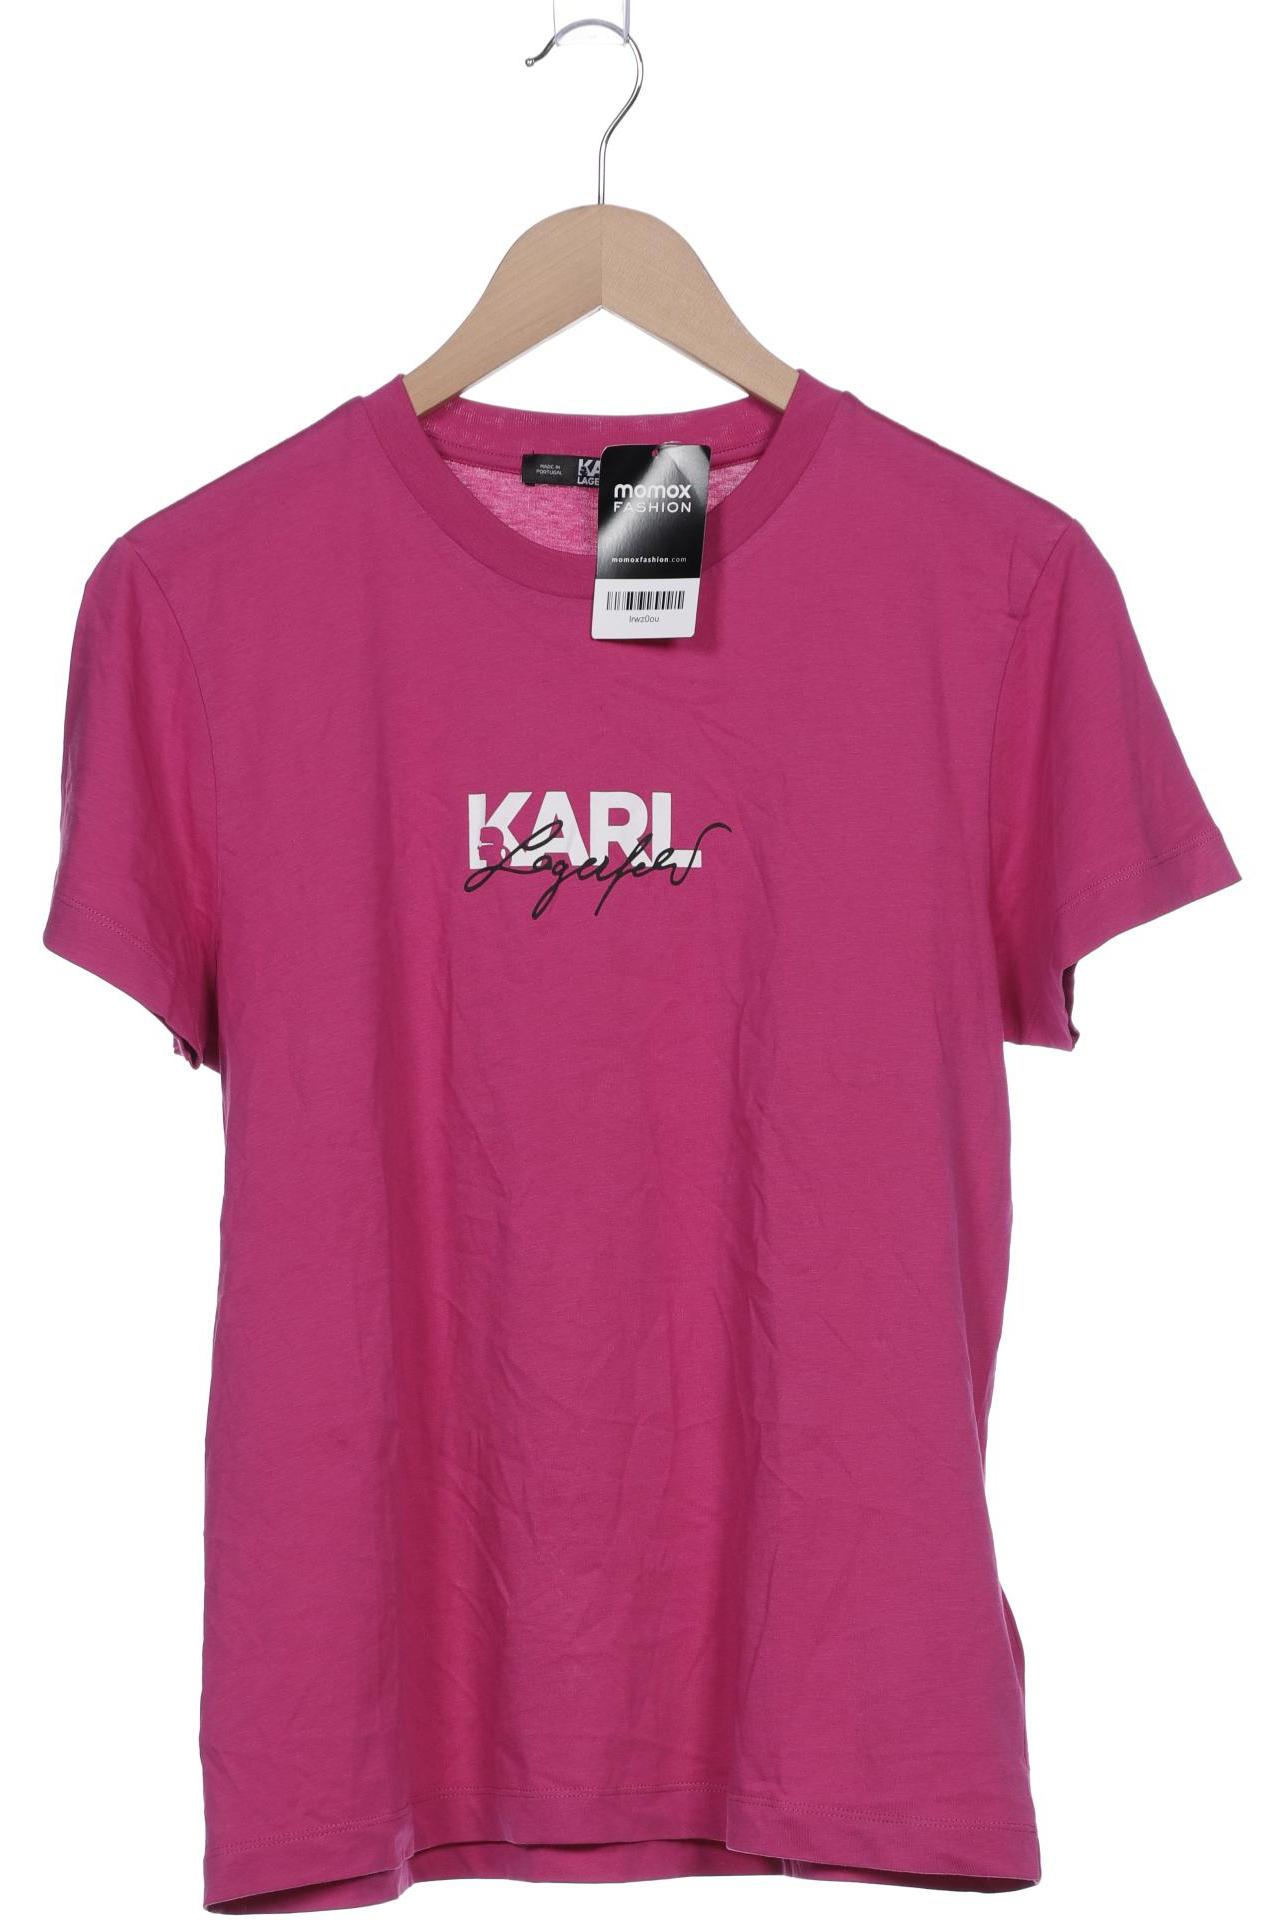 Karl by Karl Lagerfeld Damen T-Shirt, pink von Karl by Karl Lagerfeld